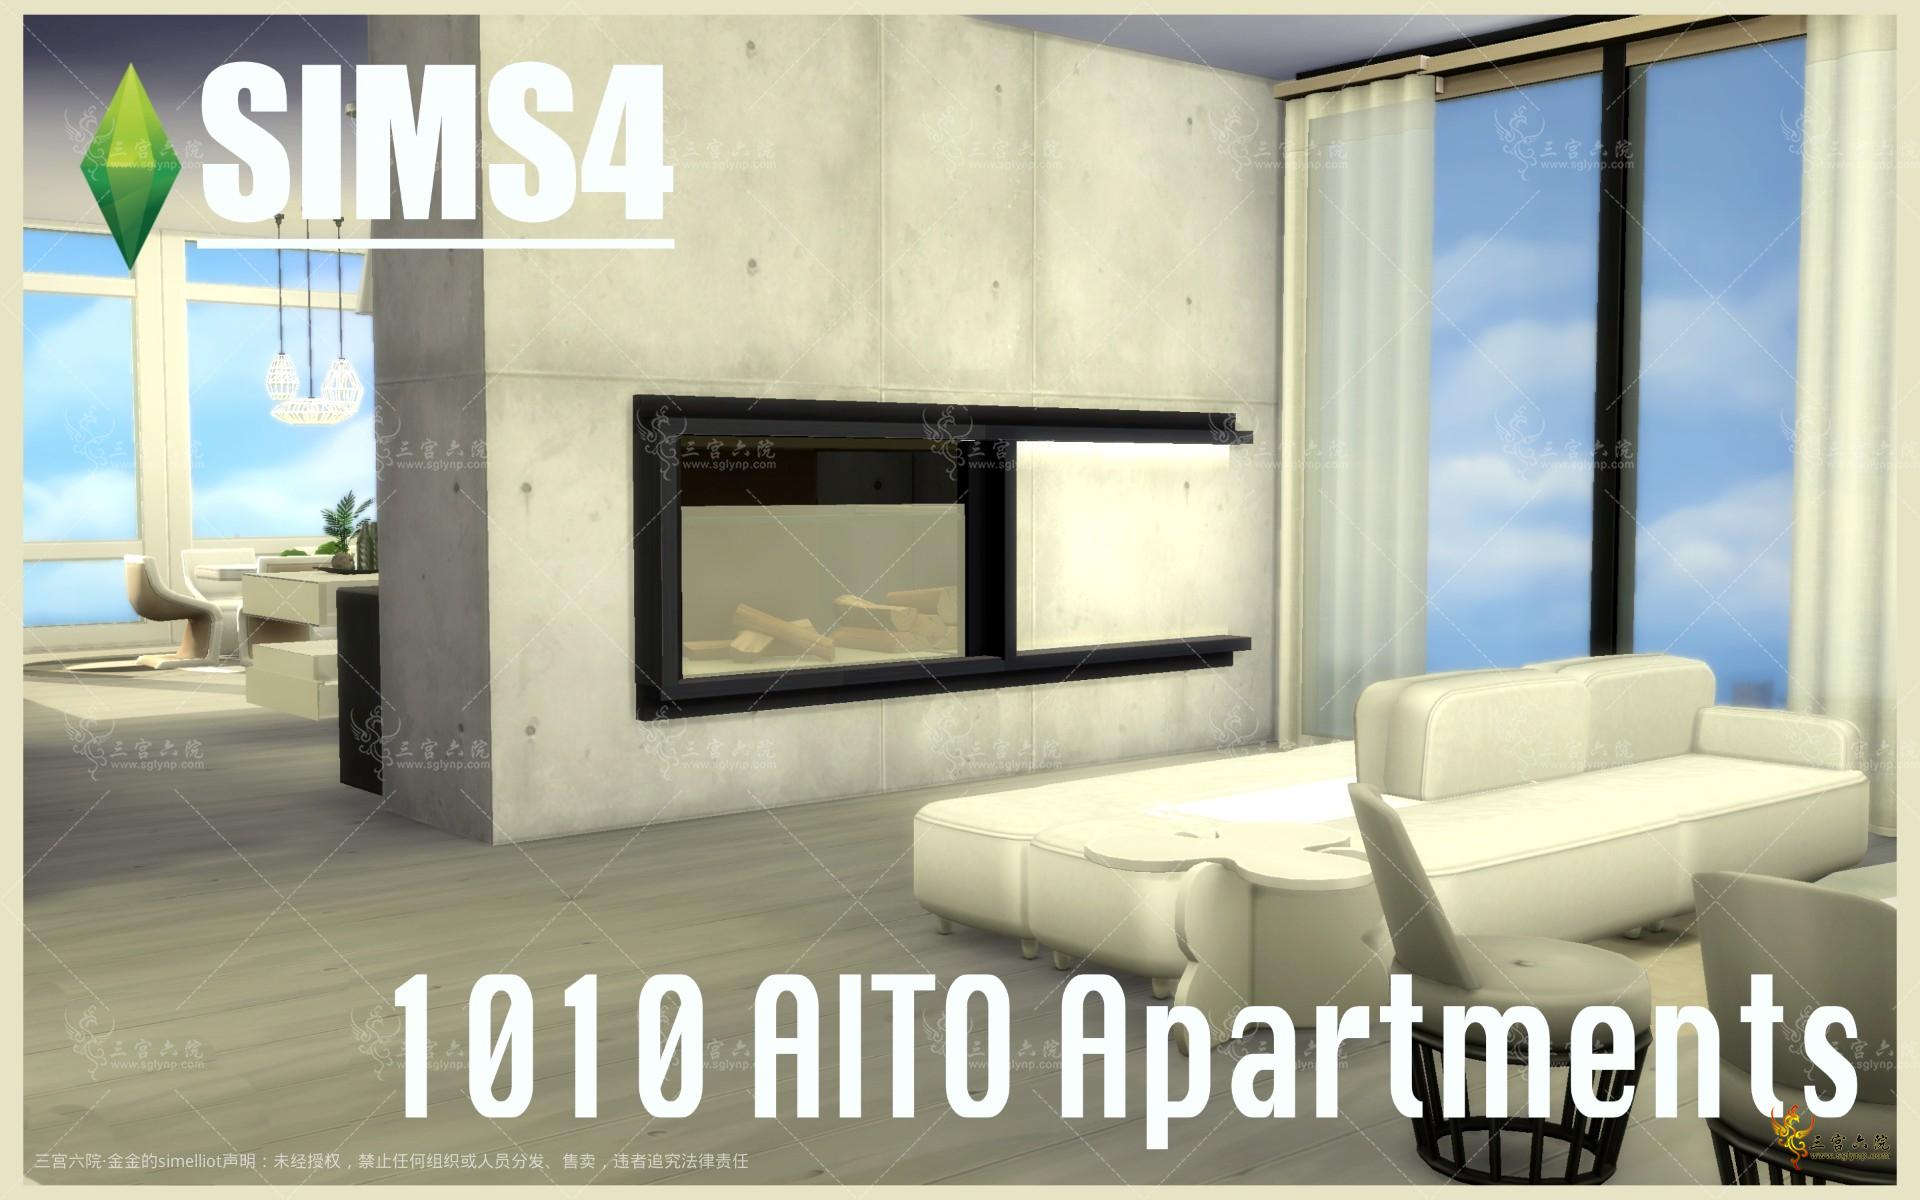 1010 Alto Apartments.png